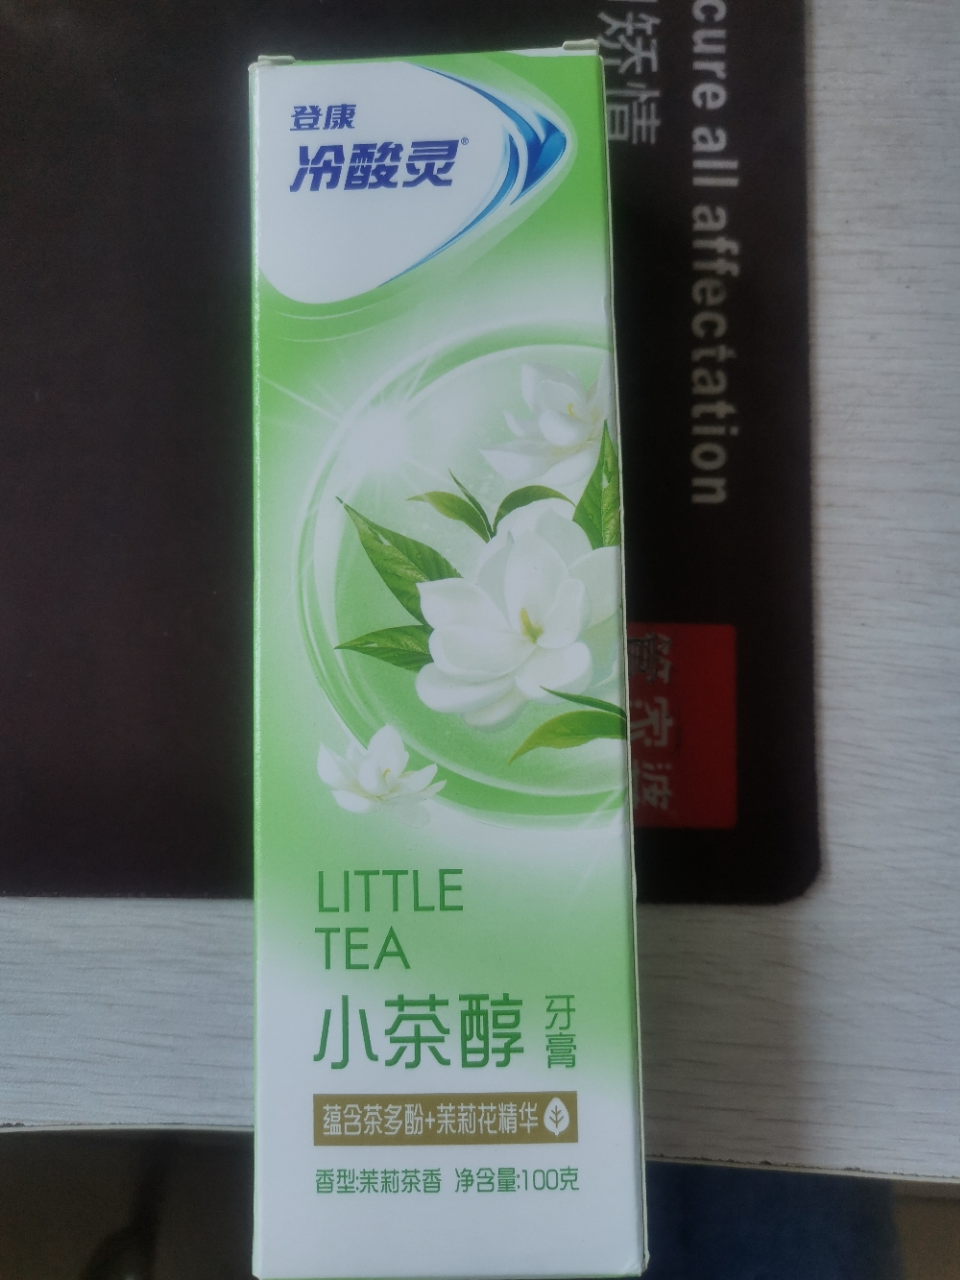 冷酸灵小系列抗敏感牙膏(小茶醇)100克 茉莉茶香 清洁牙齿 清新口气晒单图